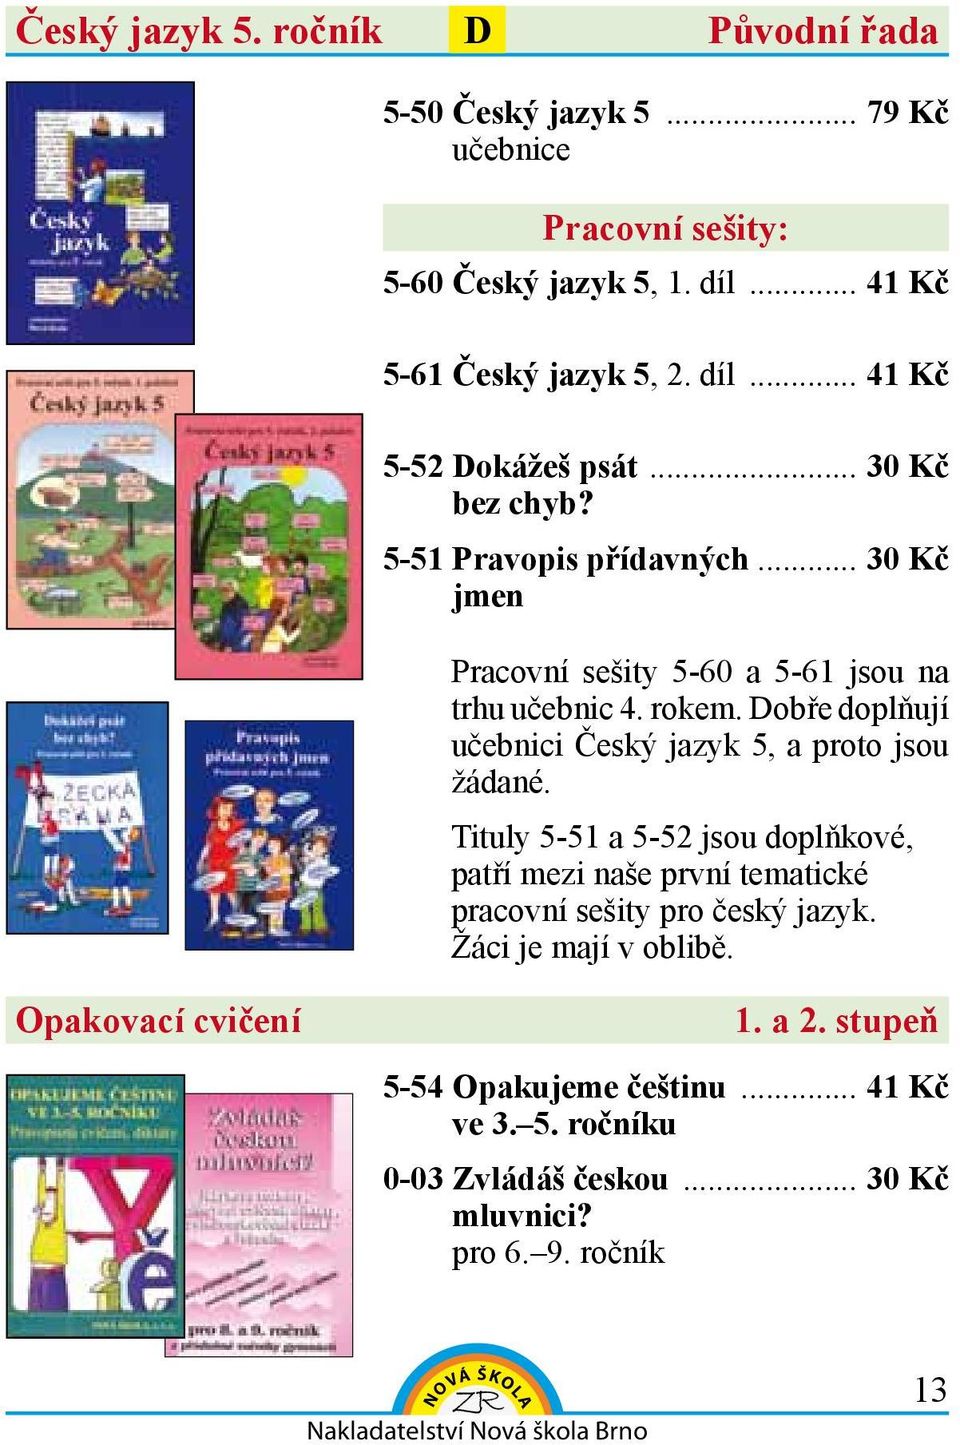 obře doplňují učebnici Český jazyk 5, a proto jsou žádané. Tituly 5-51 a 5-52 jsou doplňkové, patří mezi naše první tematické y pro český jazyk.